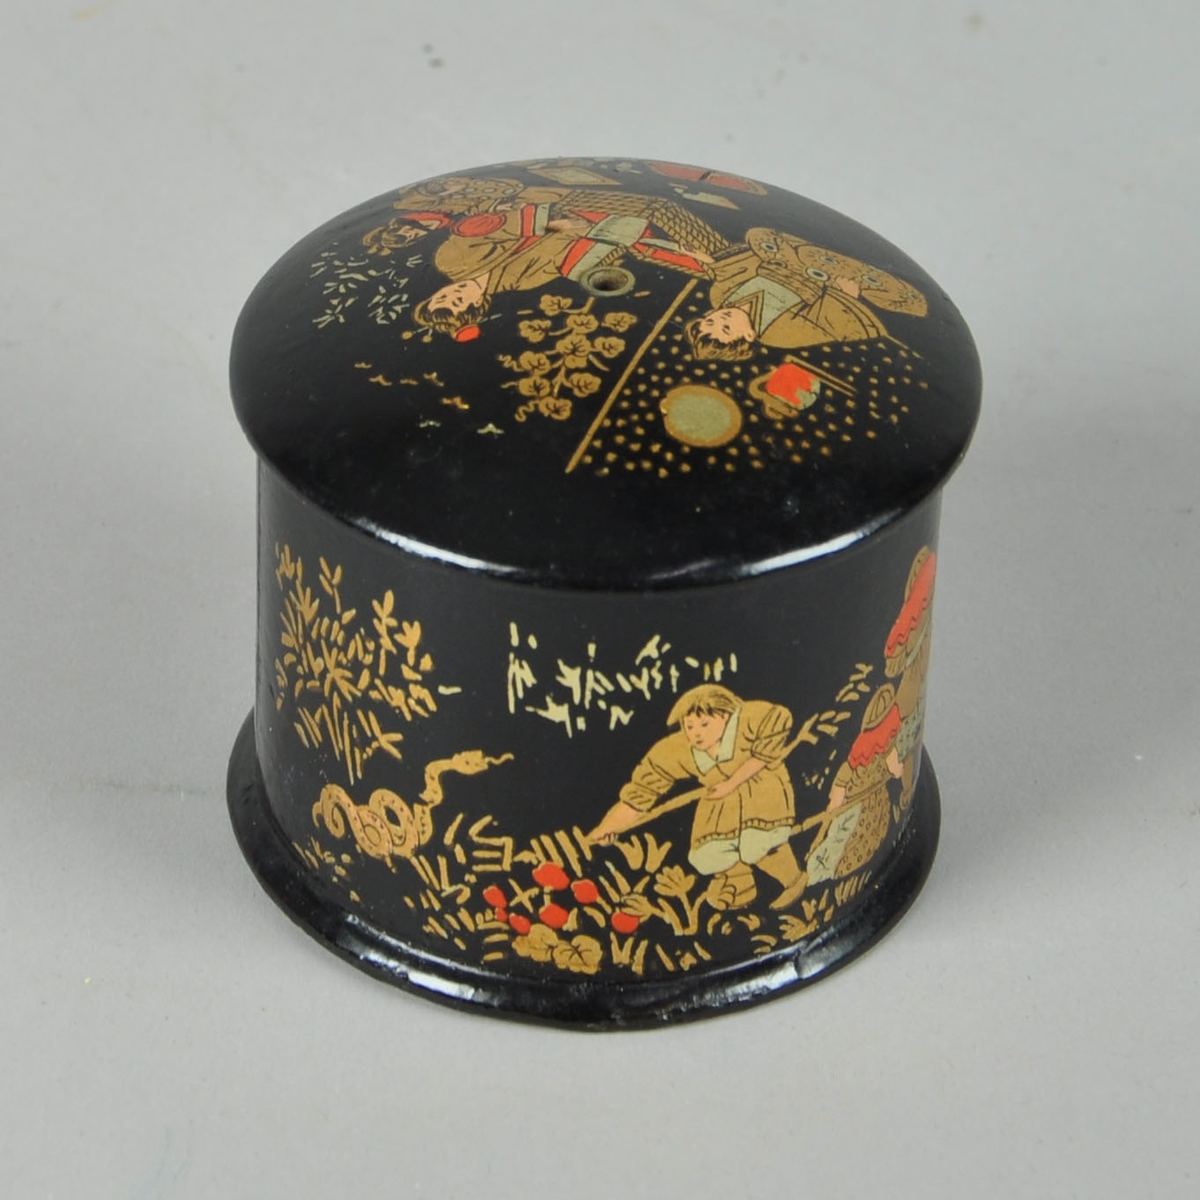 Sort nøstekopp med kinesisk-inspirert motiv. Motivet er i gull, sølv, sort og rødt. Det er både motiv på lokket og selve koppen. Nøstekoppen er sort innvendig.